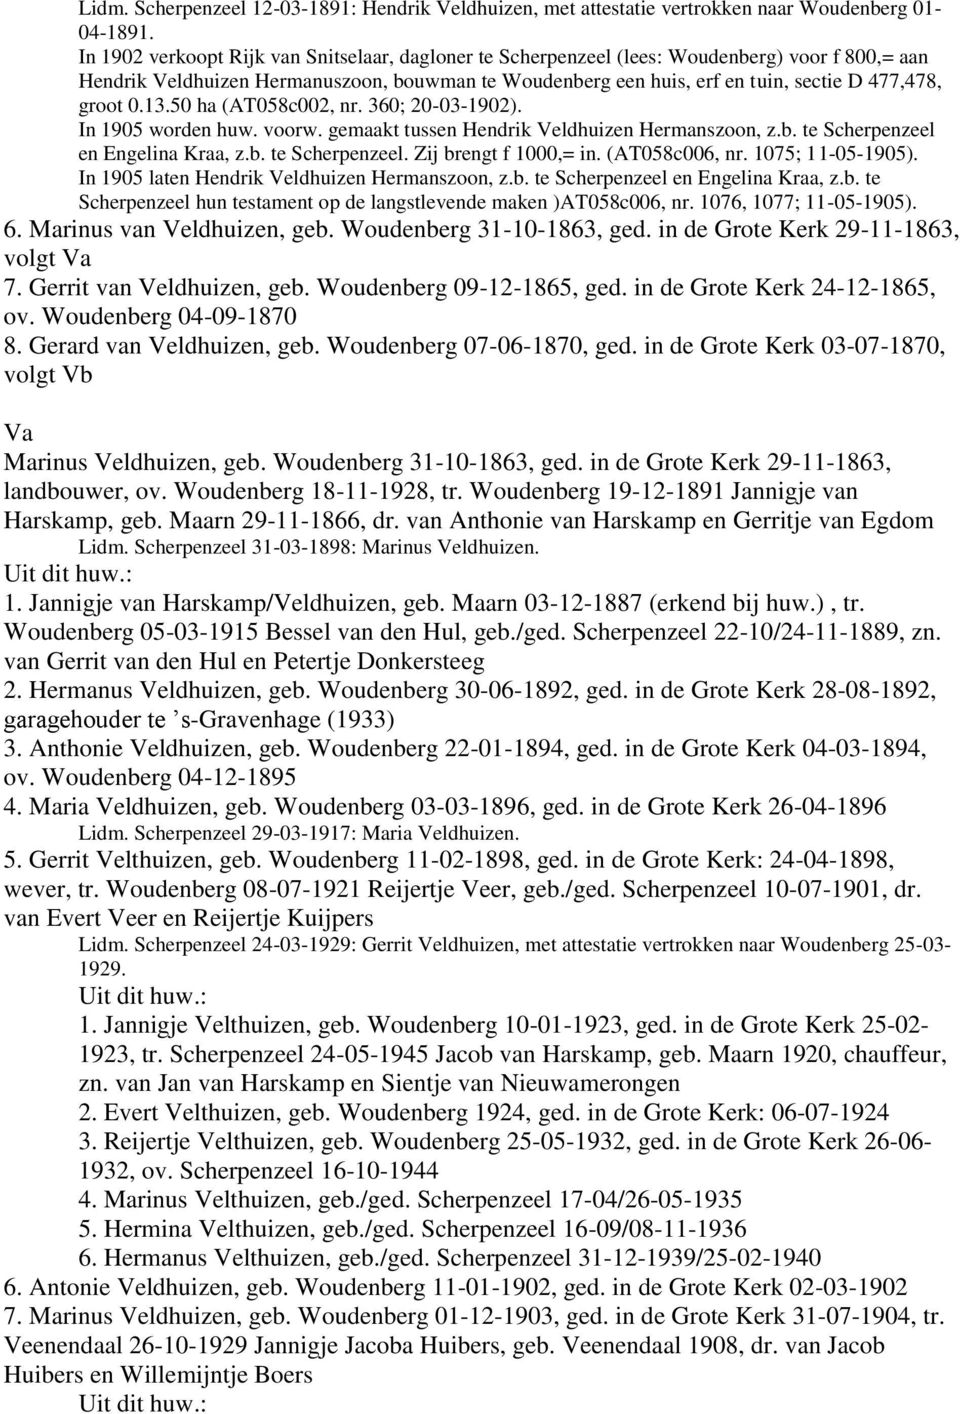 groot 0.13.50 ha (AT058c002, nr. 360; 20-03-1902). In 1905 worden huw. voorw. gemaakt tussen Hendrik Veldhuizen Hermanszoon, z.b. te Scherpenzeel en Engelina Kraa, z.b. te Scherpenzeel. Zij brengt f 1000,= in.